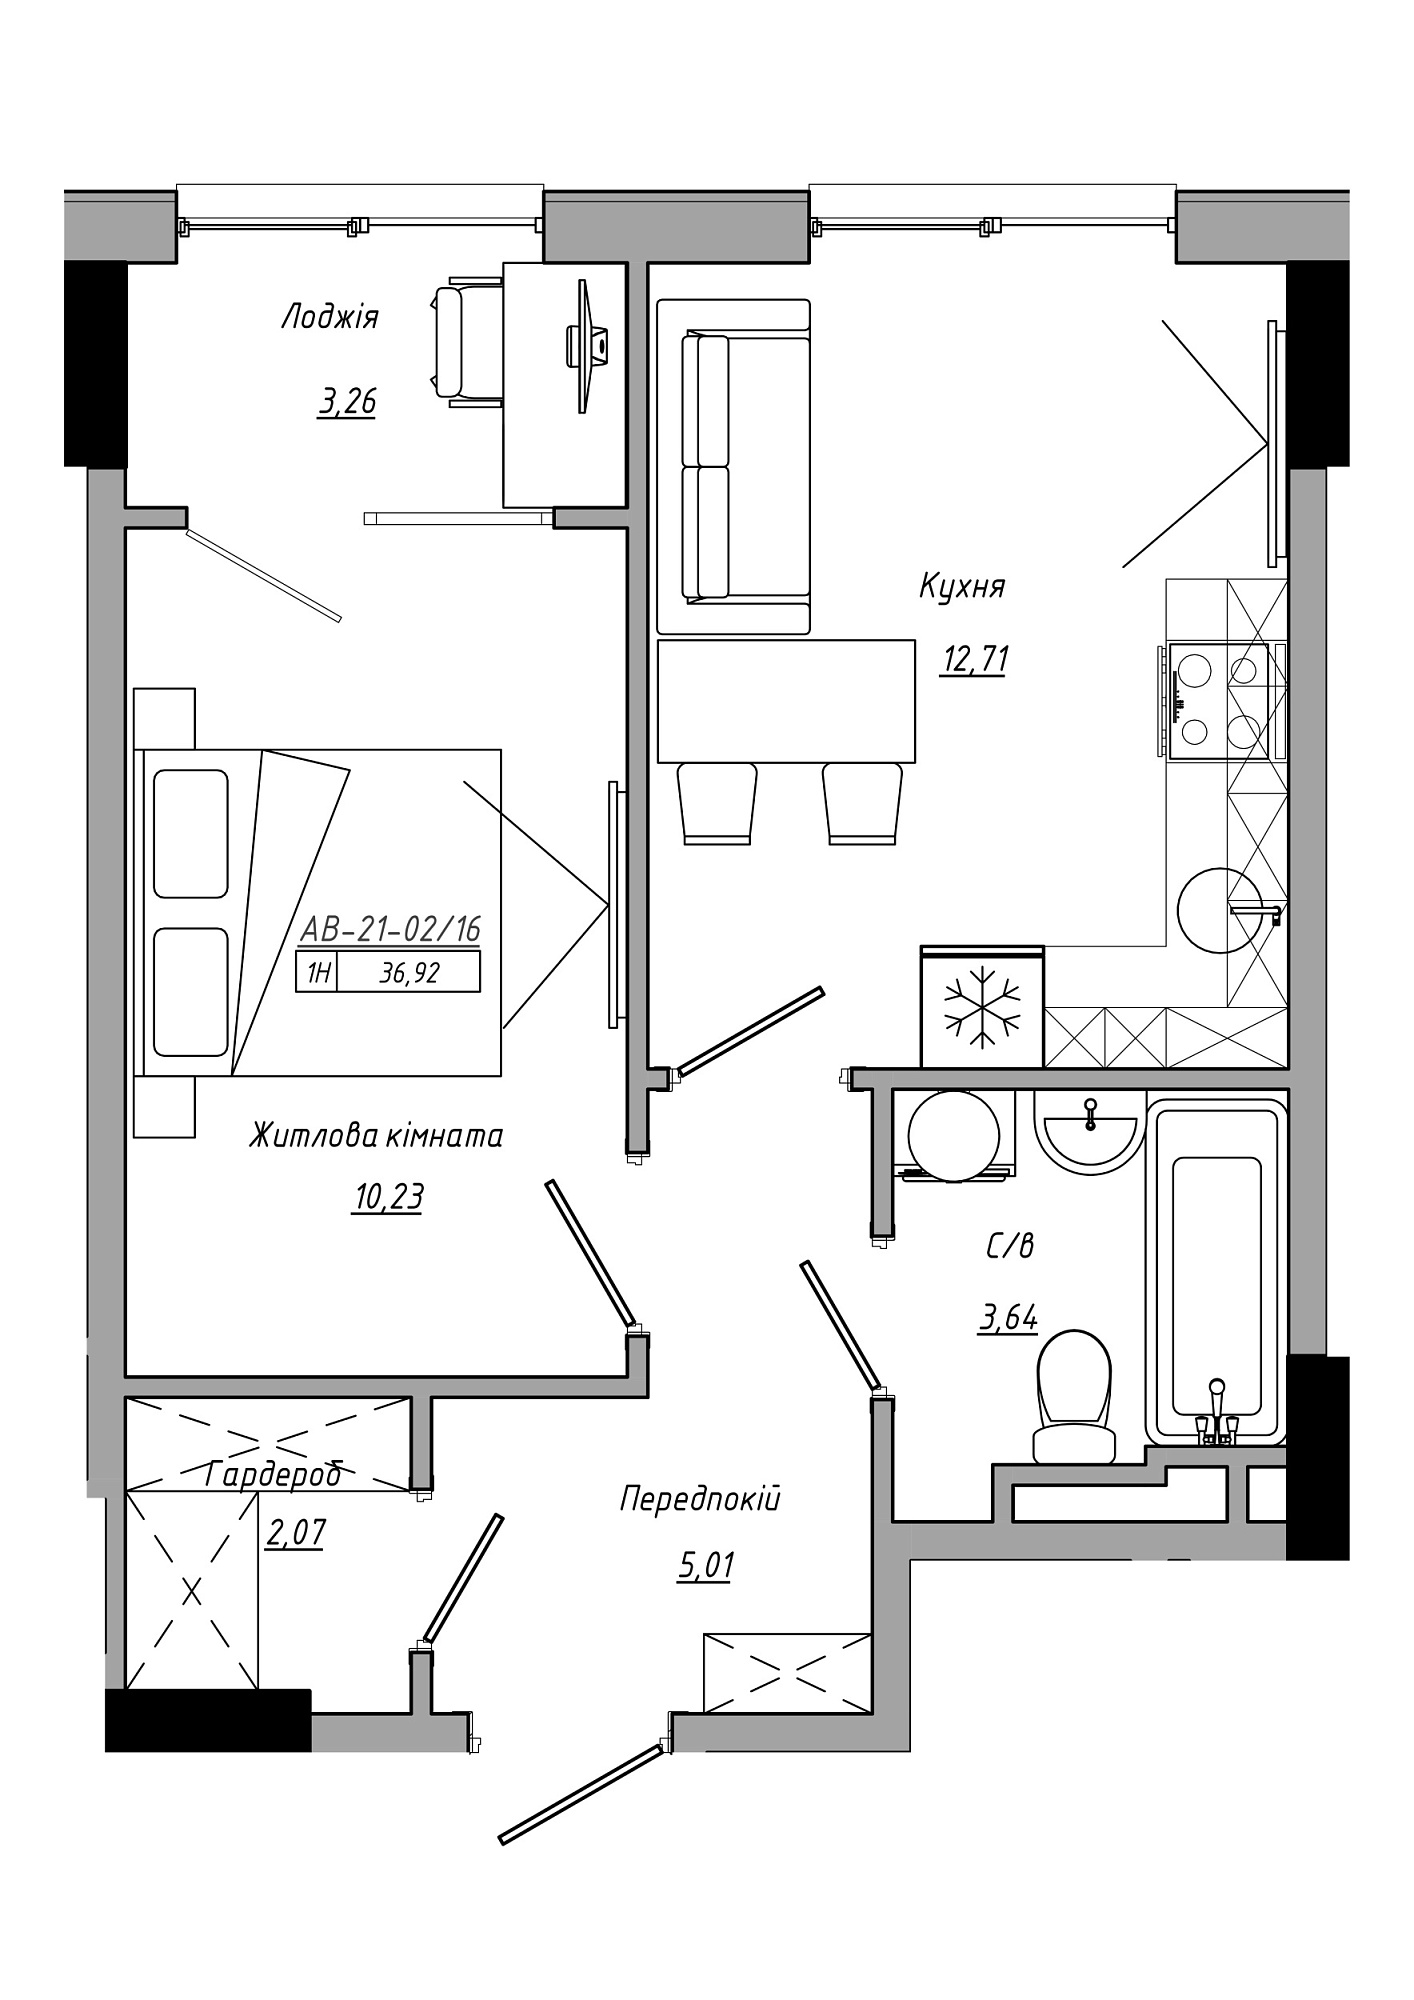 Планировка 1-к квартира площей 36.92м2, AB-21-02/00016.